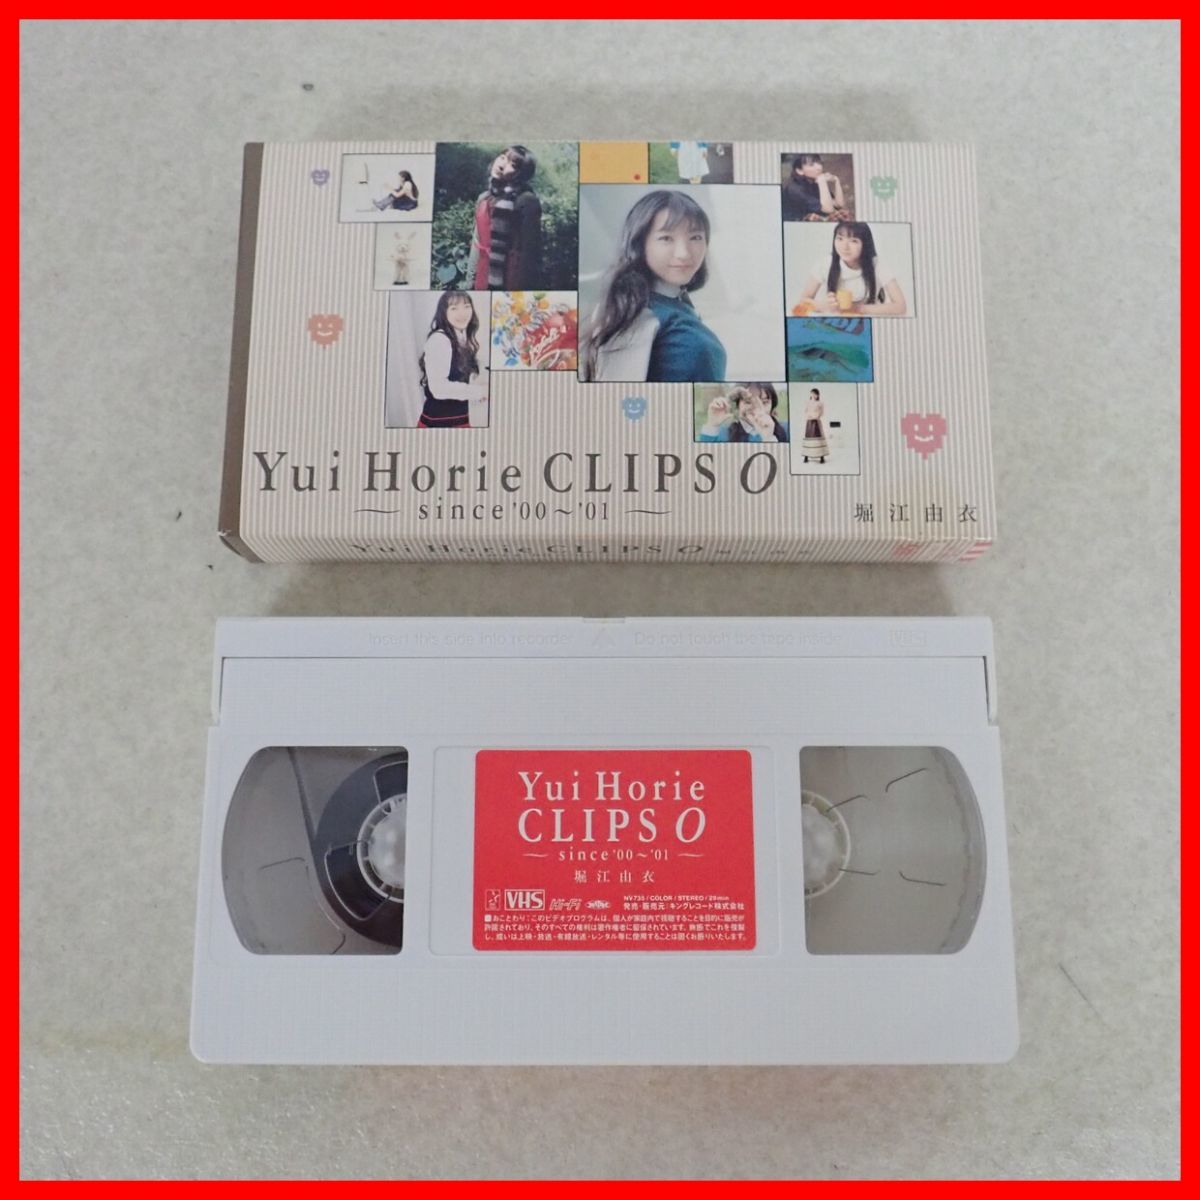 *VHS Хориэ ..Yui Horie CLIPS 0 since*00*~01 King запись [10